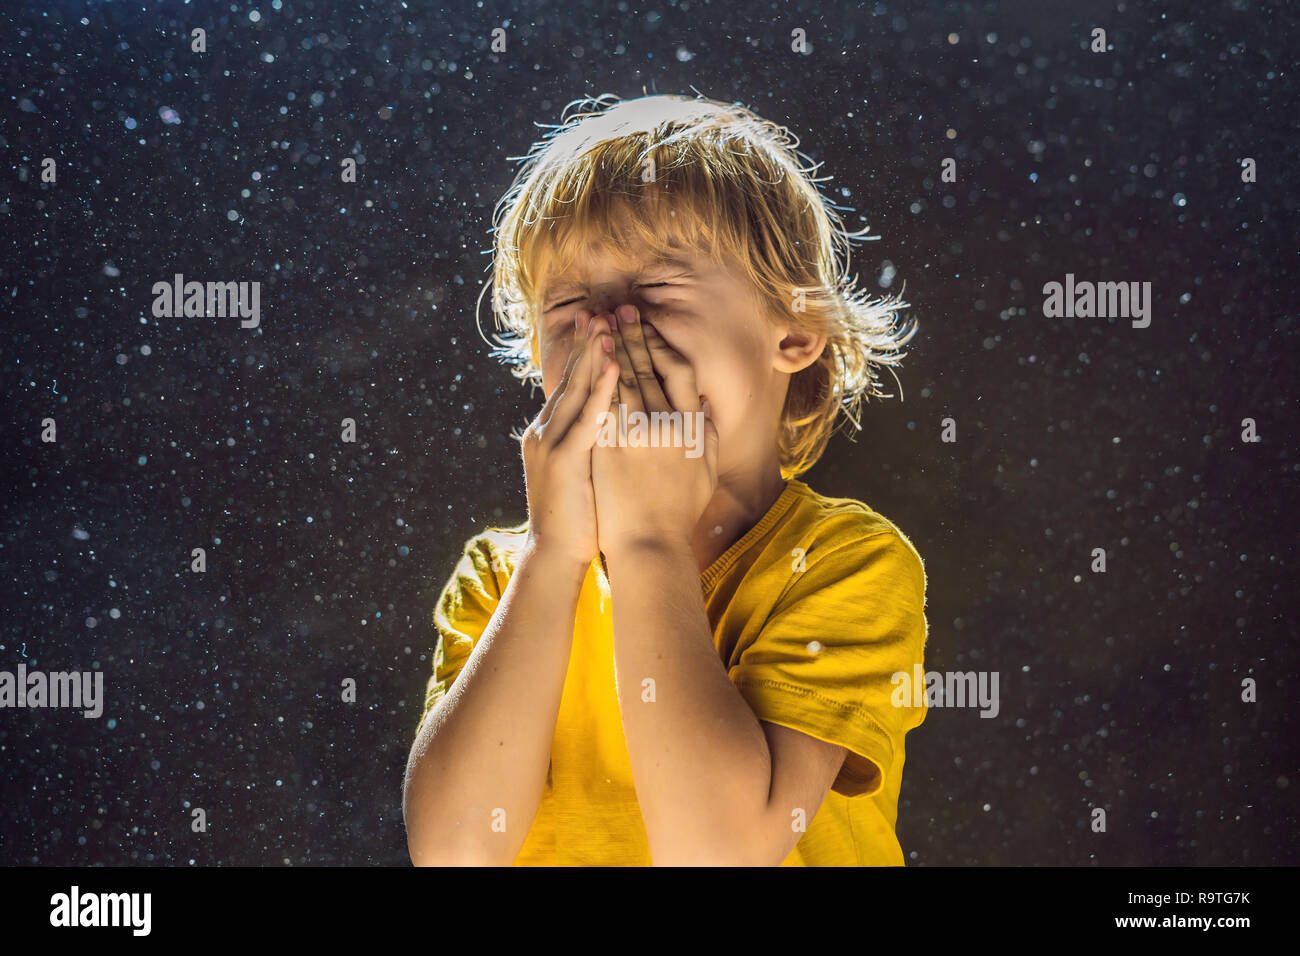 Allergie gegen Staub. Junge niest, weil er allergisch gegen Staub ist.  Staub fliegt in der Luft durch Licht mit Hintergrundbeleuchtung  Stockfotografie - Alamy